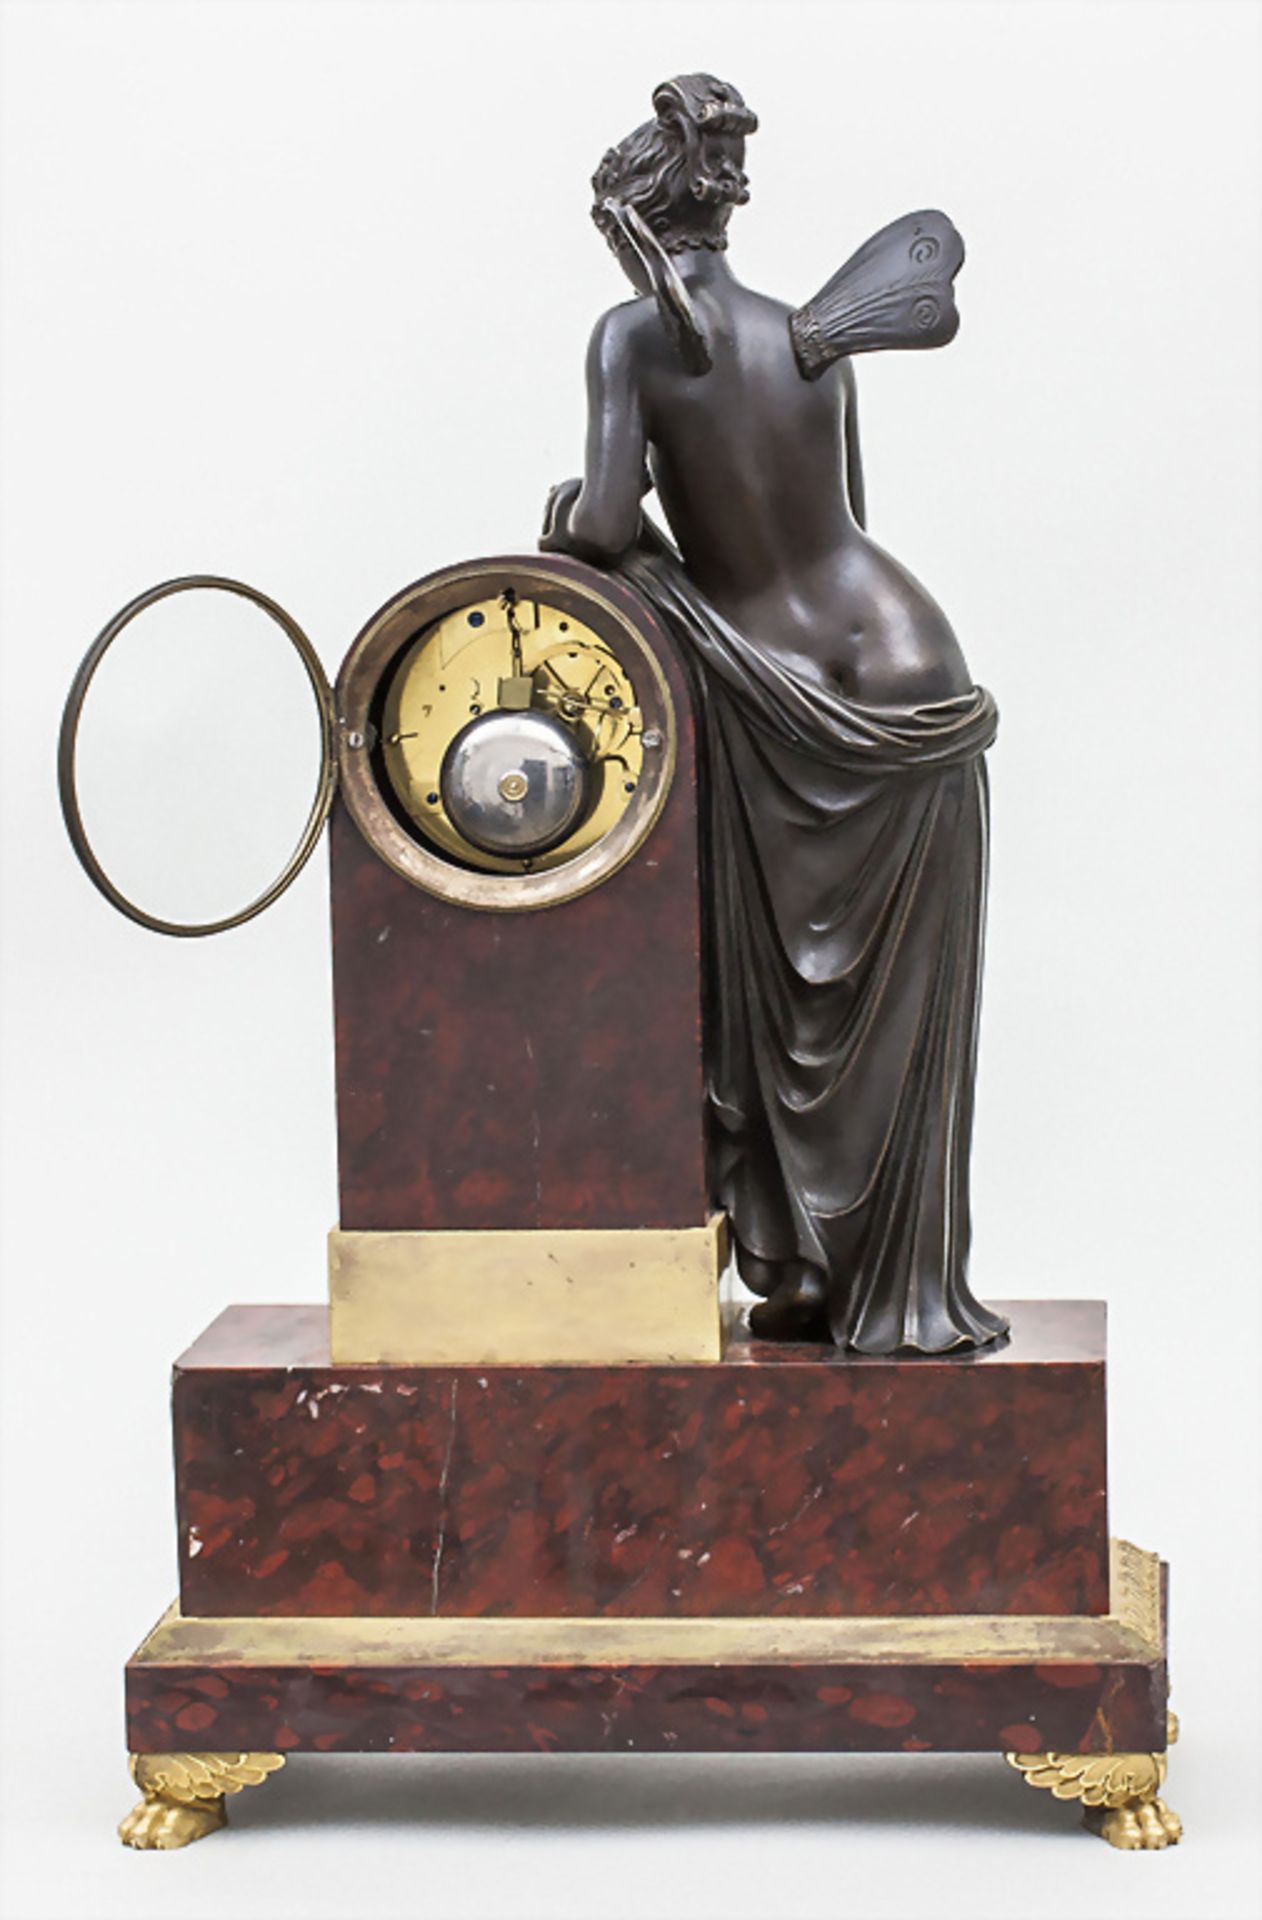 Empire Kaminuhr mit Bronze Skulptur 'Psyche' / An Empire mantel clock with bronze statue of ... - Bild 3 aus 5